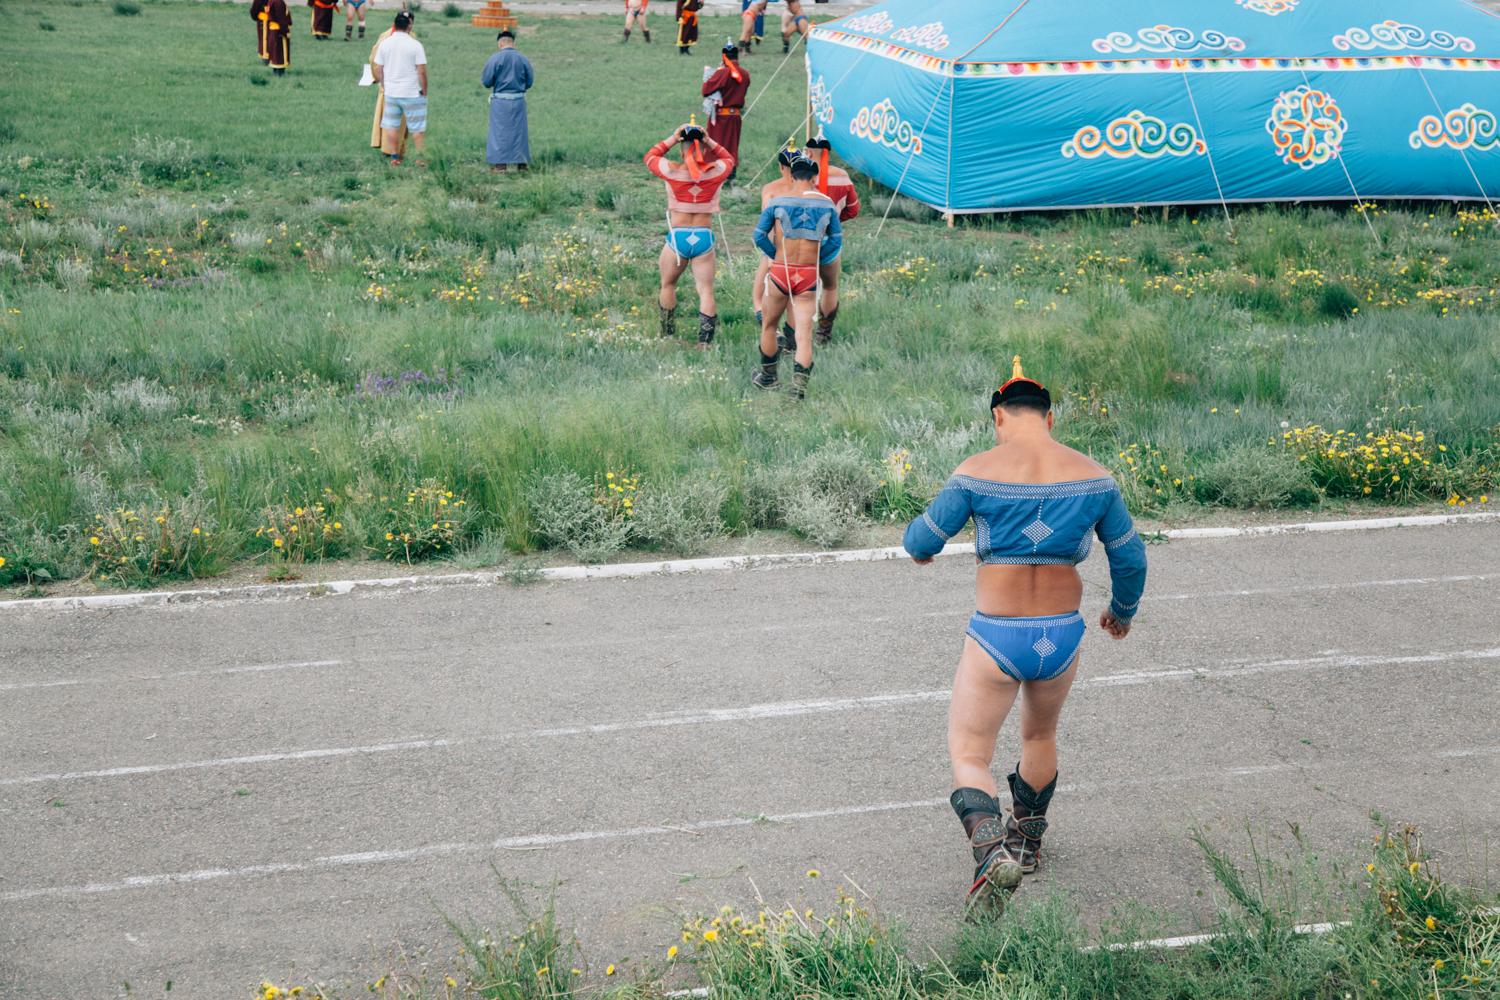 Wrestling/Mongolia